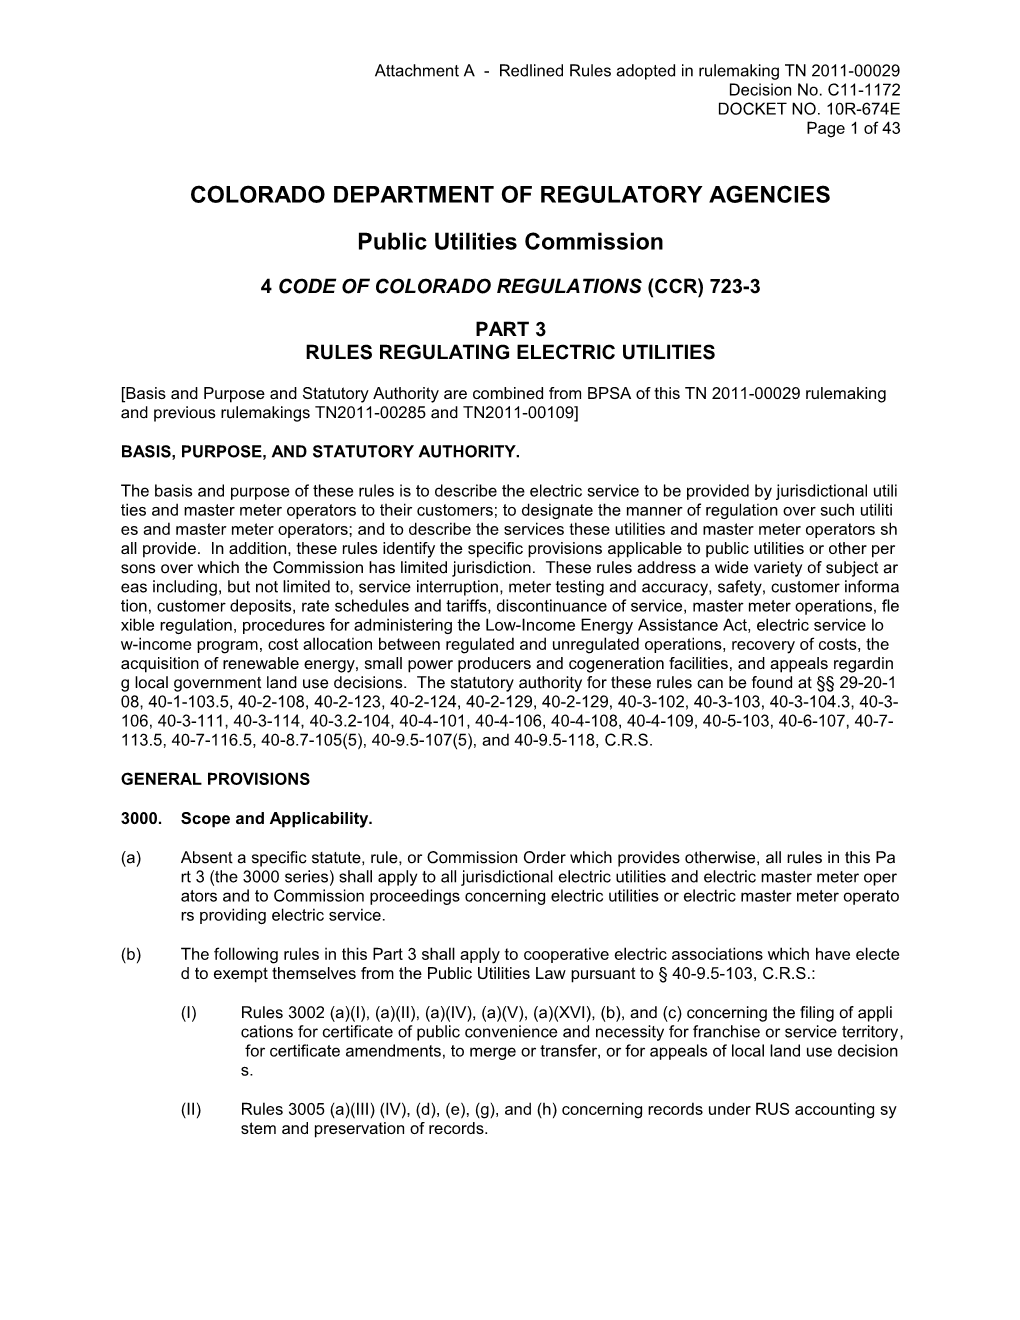 Colorado Department of Regulatory Agencies s1